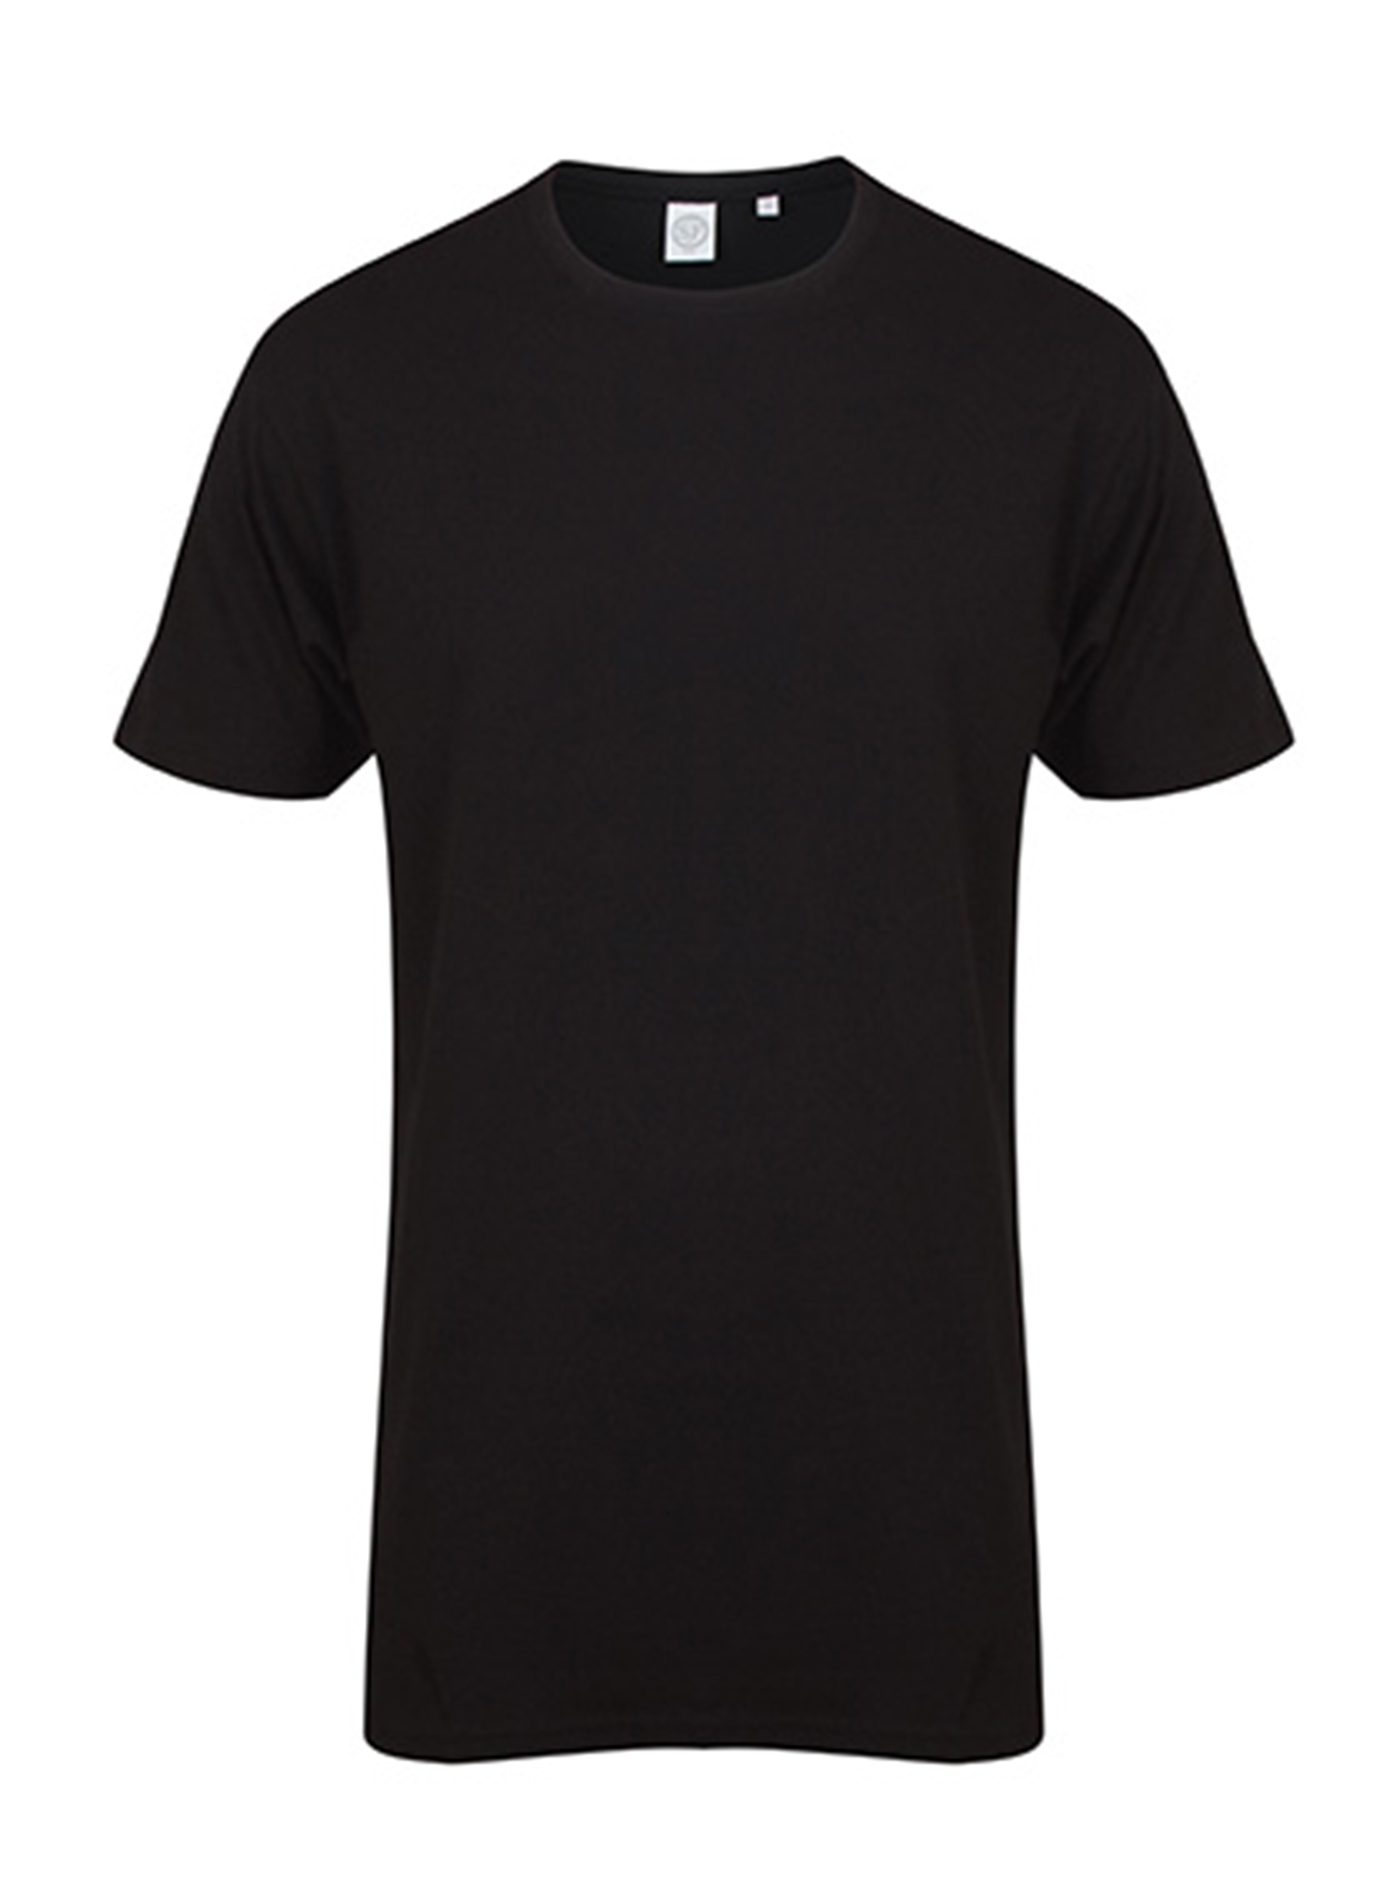 Pánské tričko s prodlouženým zadním dílem Skinnifit Longline T - černá L